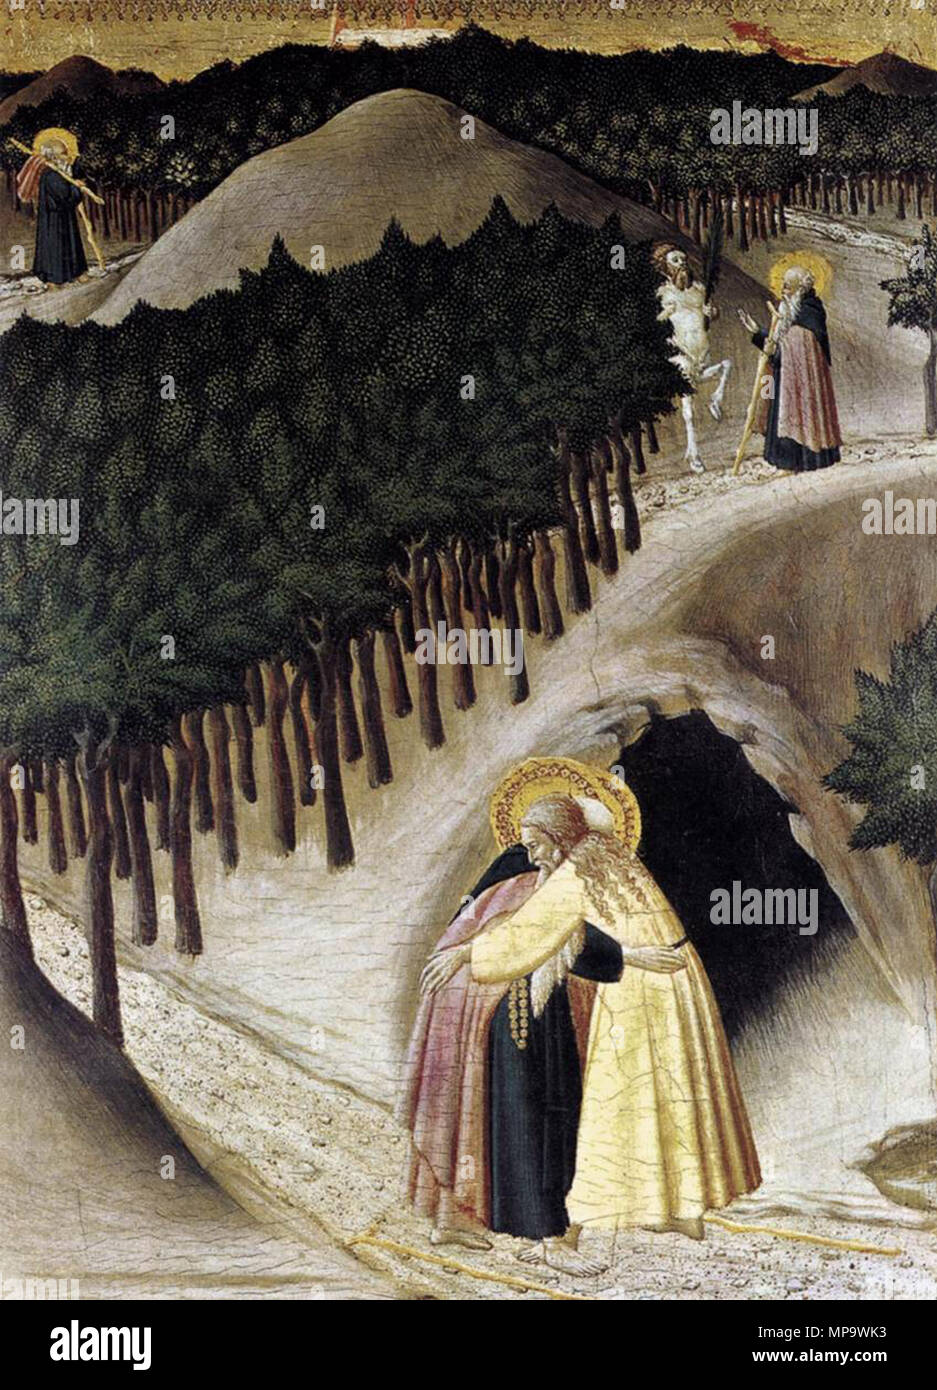 English: St Anthony Goes in Search of St Paul the Hermit   circa 1440.   842 Maestro dell'osservanza, sant'antonio va alla ricerca di Paolo l'eremita Stock Photo